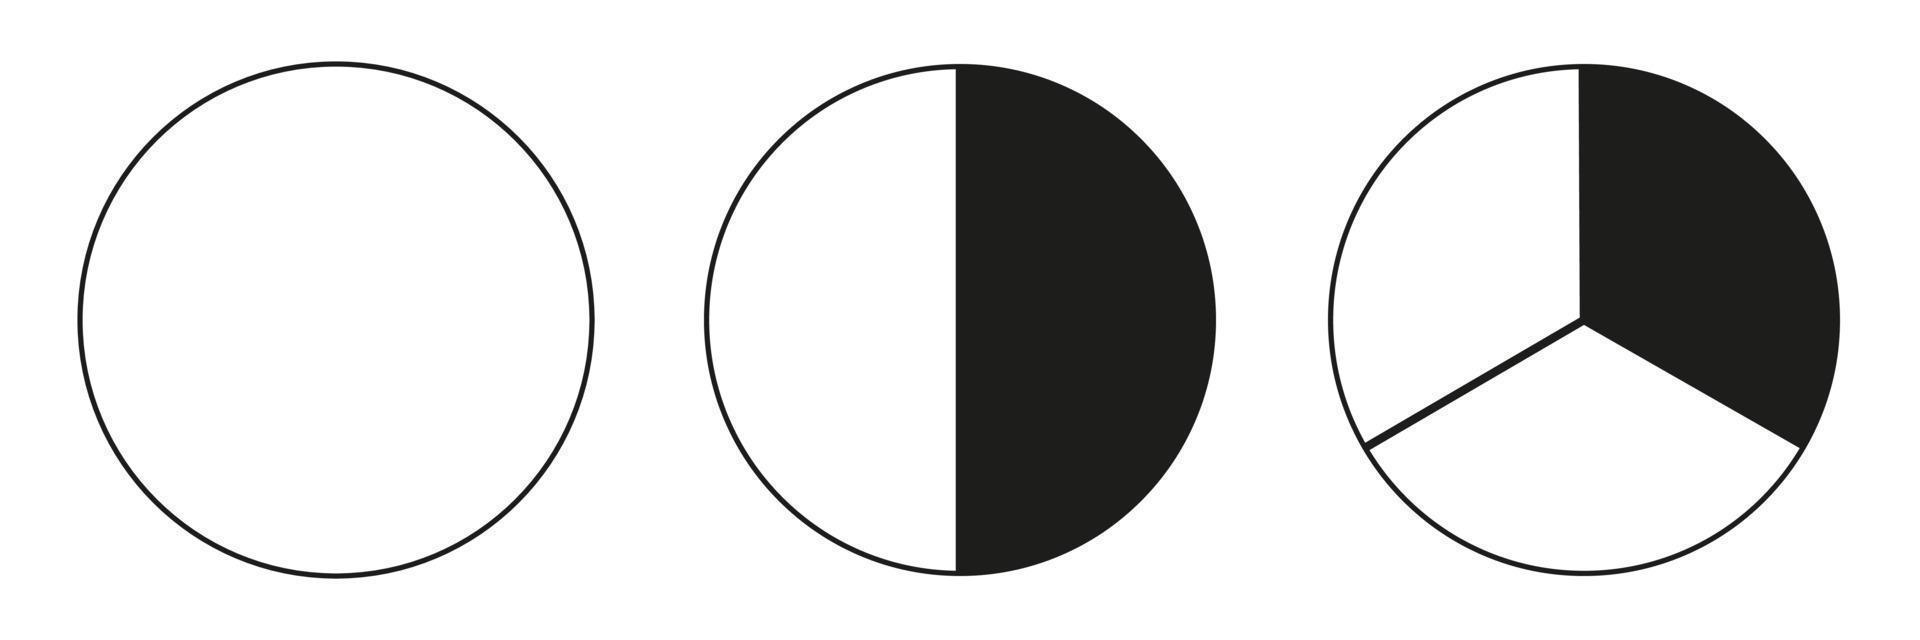 coleção de gráficos segmentados. muitos setores dividem o círculo em partes iguais. delinear gráficos finos pretos. conjunto de gráficos de pizza. vetor